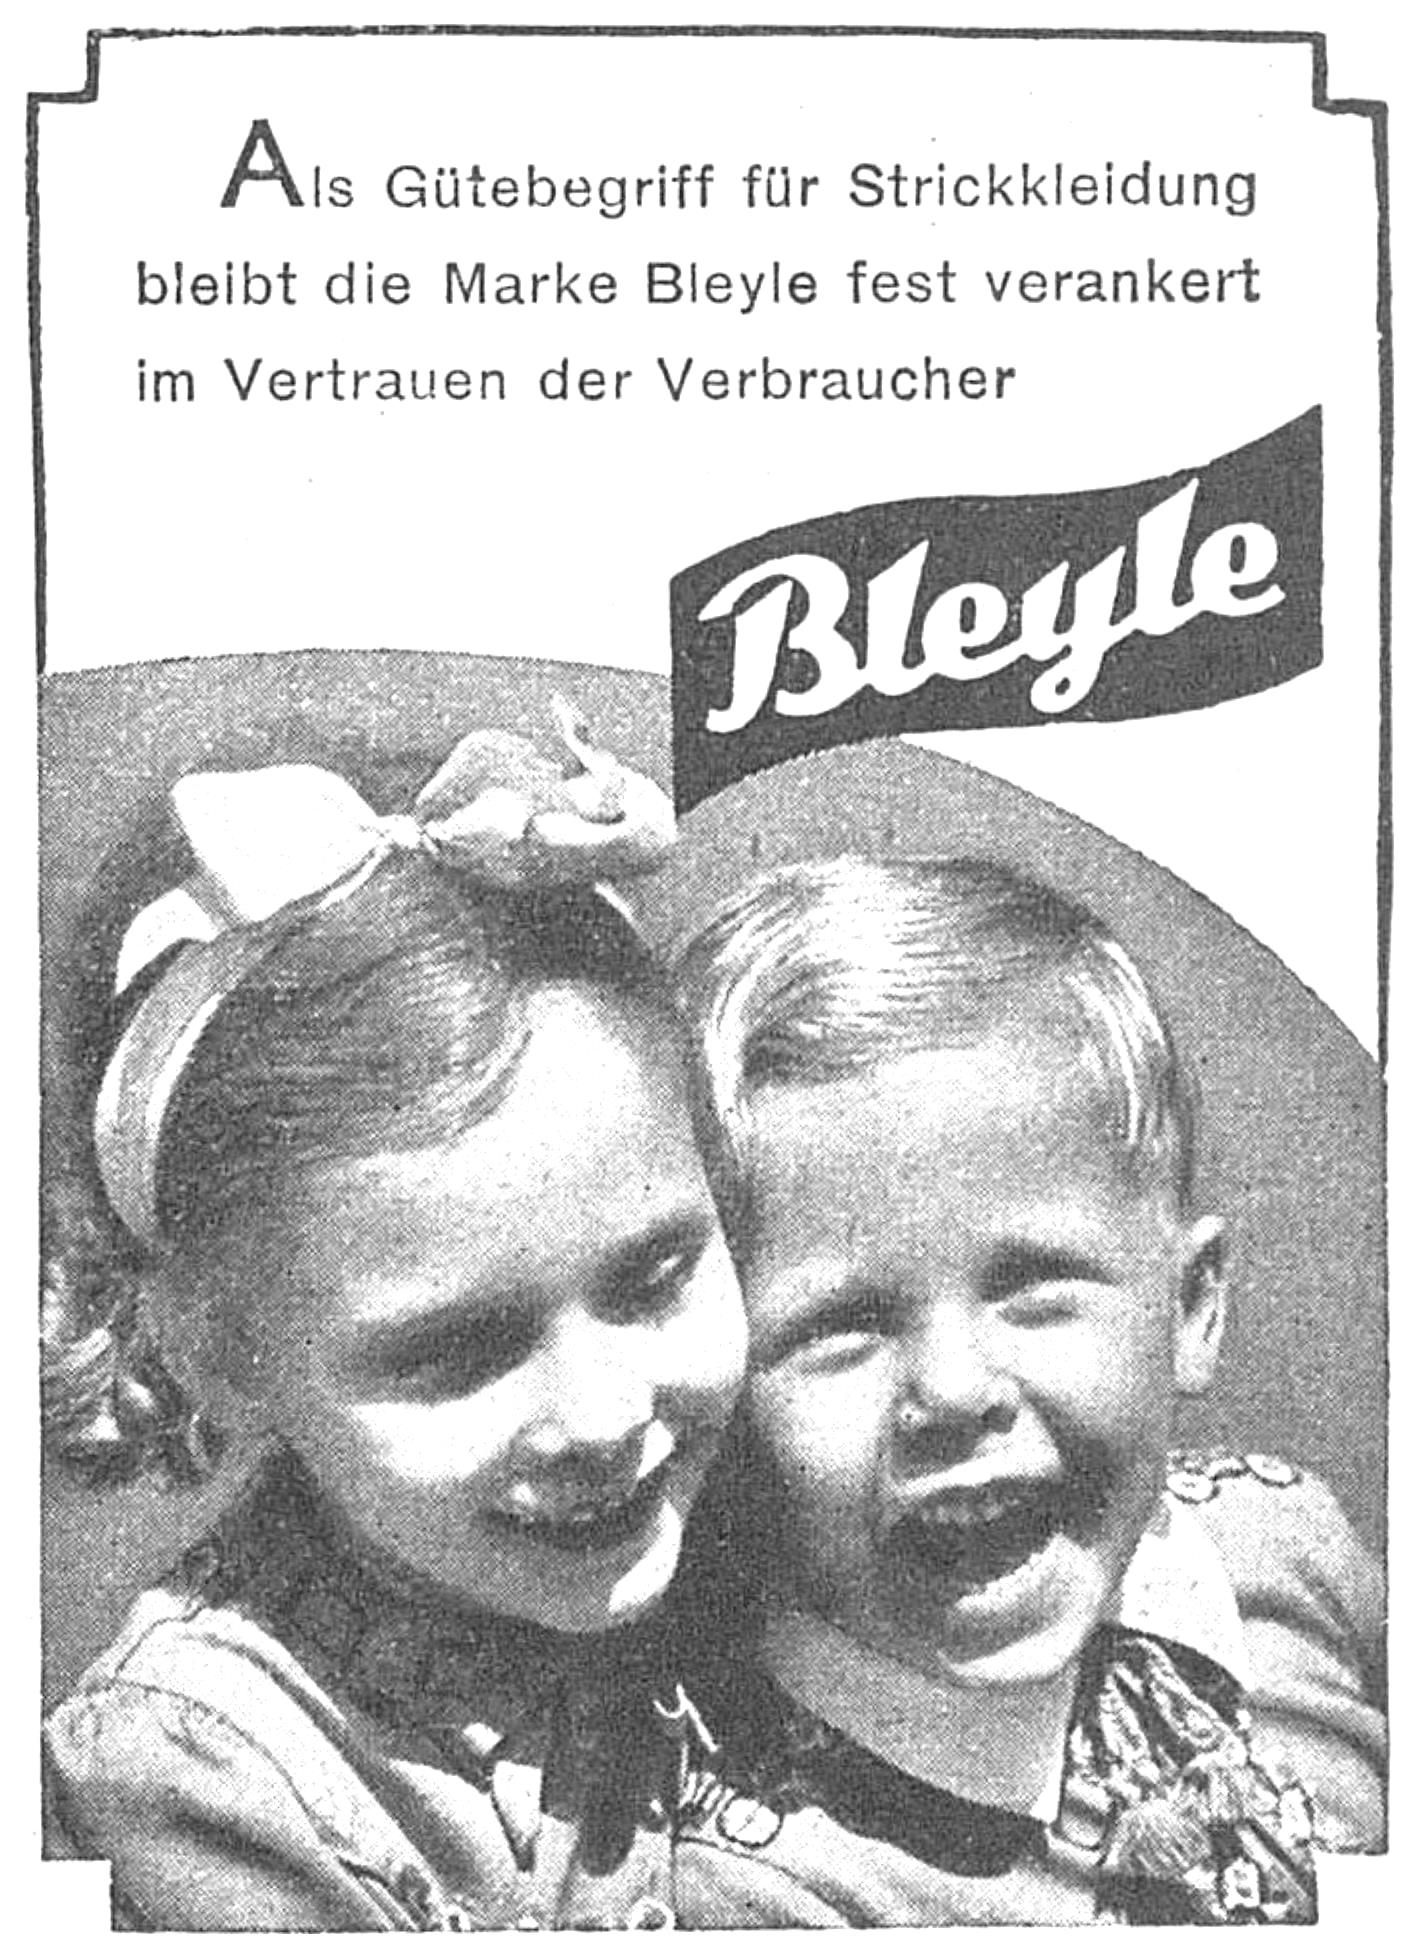 Blexle 1942 0.jpg